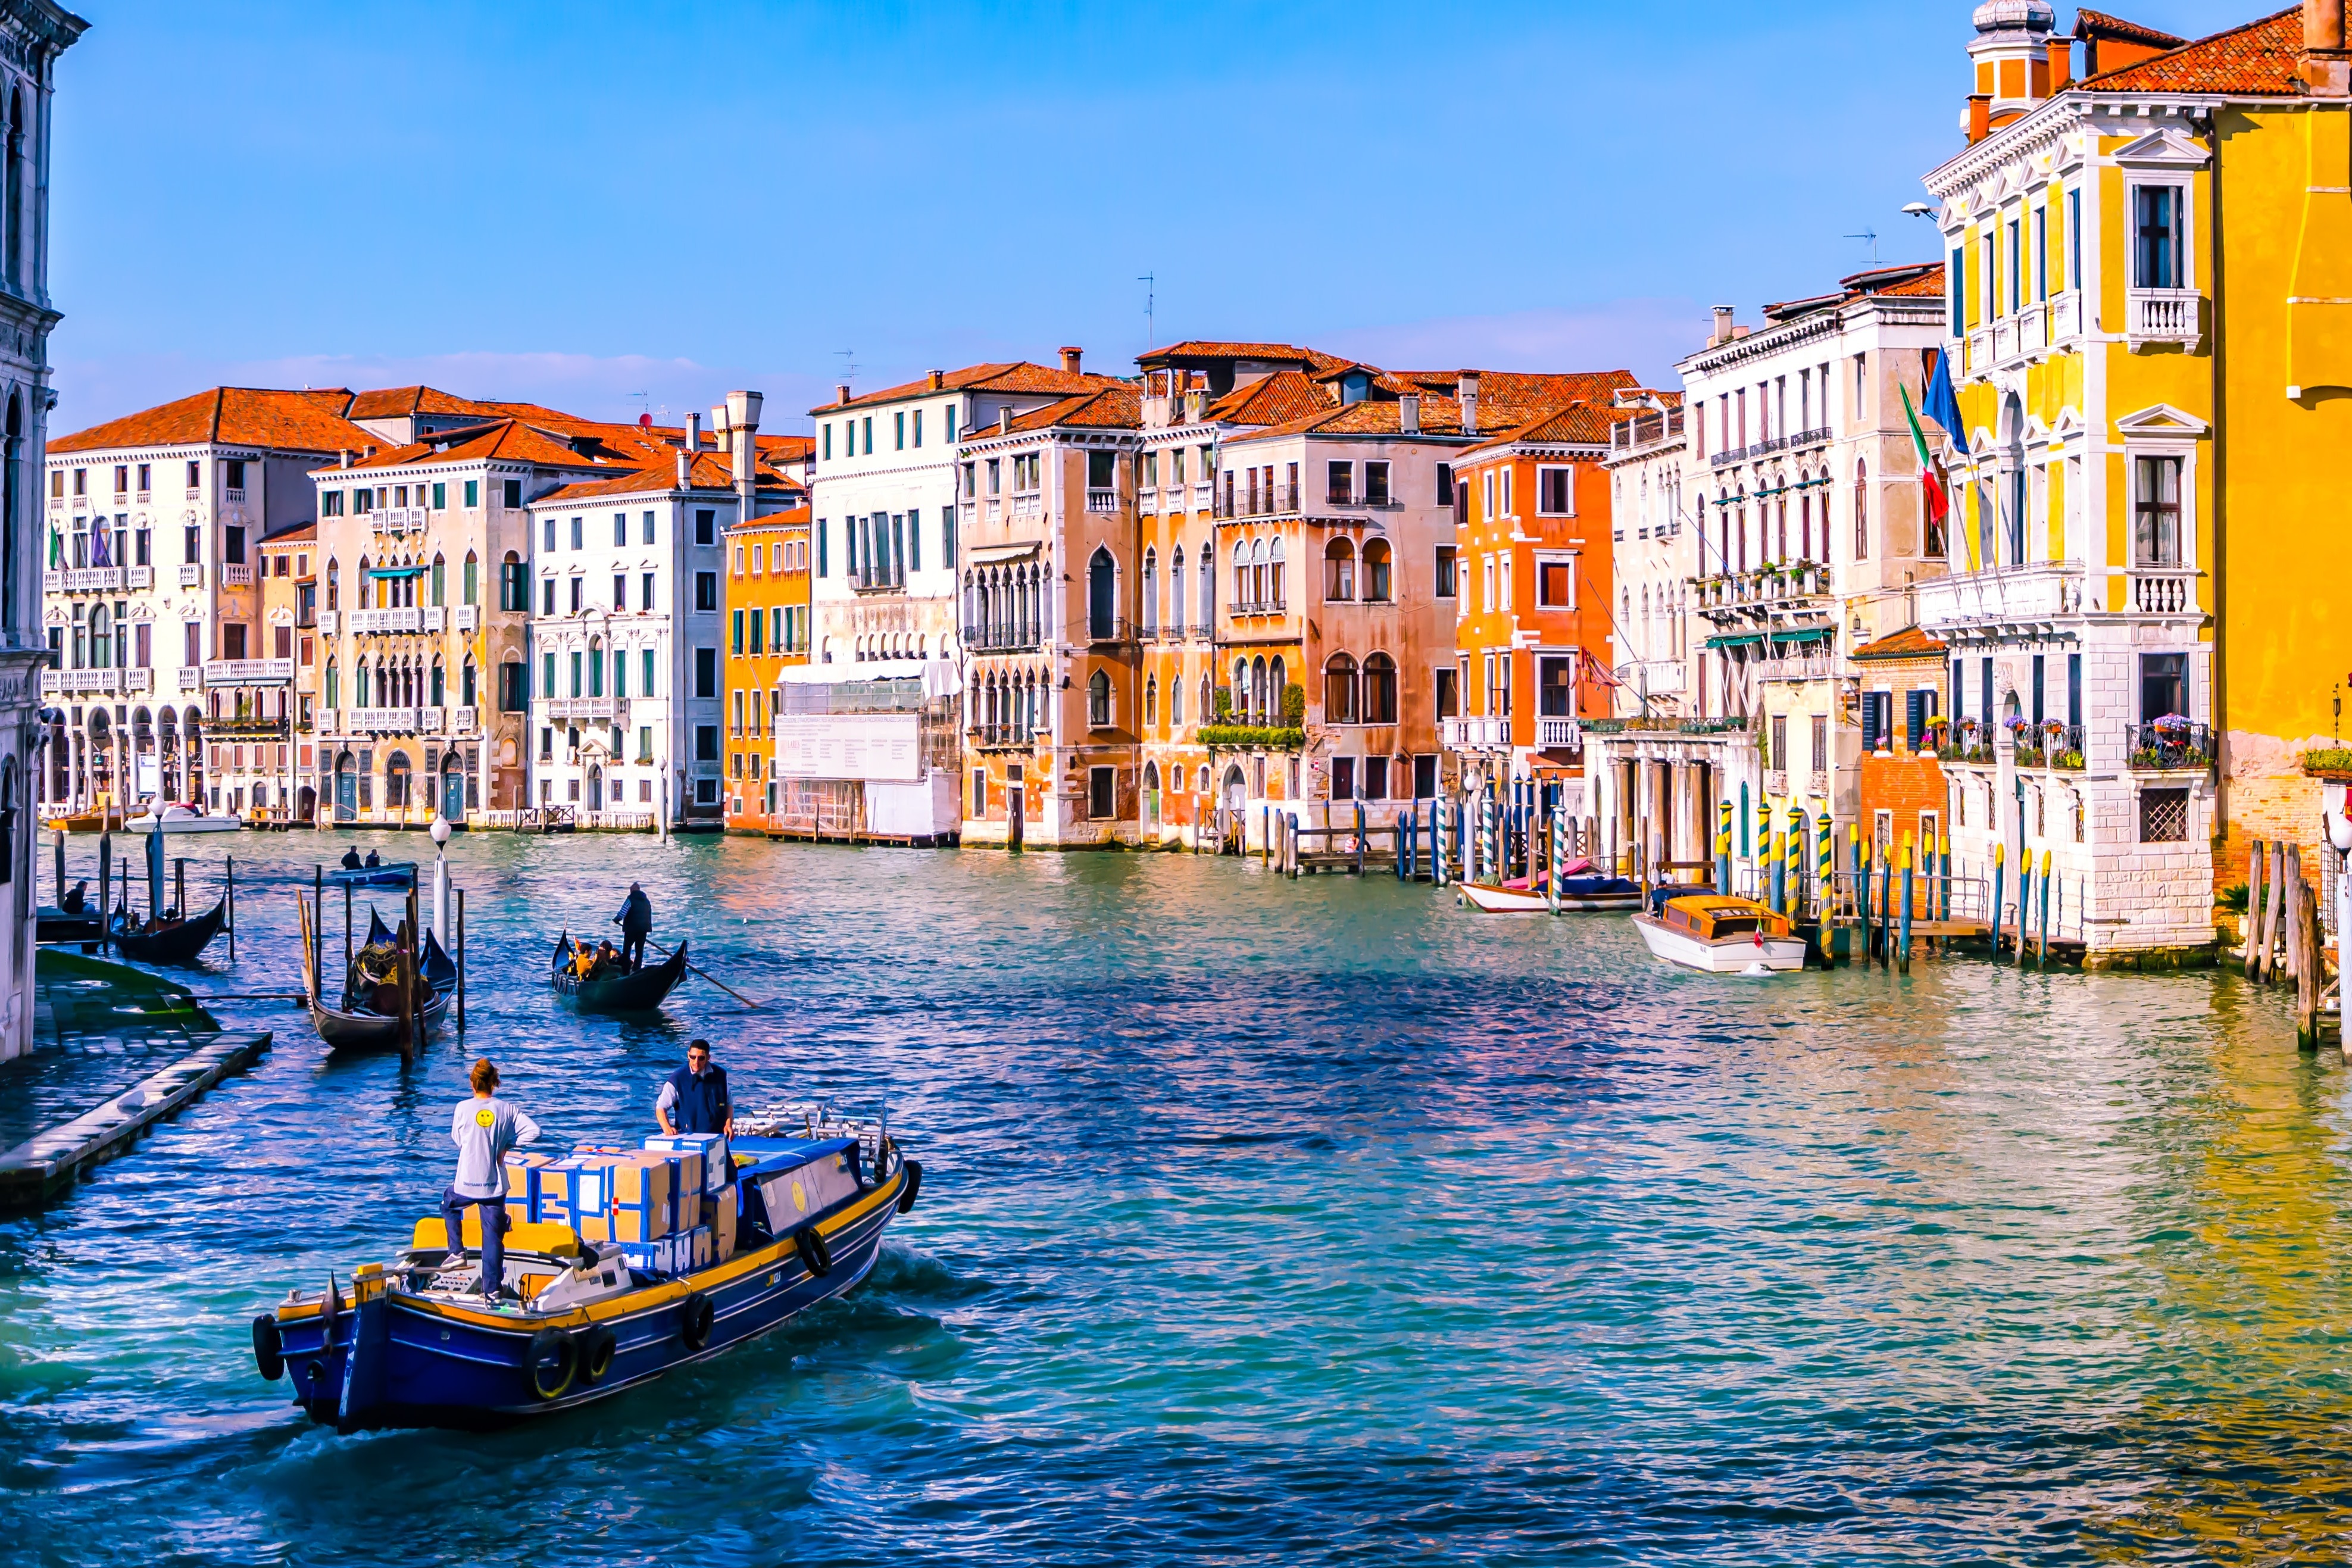 聯合國教科文組織建議將威尼斯
 列入瀕危世界文化遺產名錄